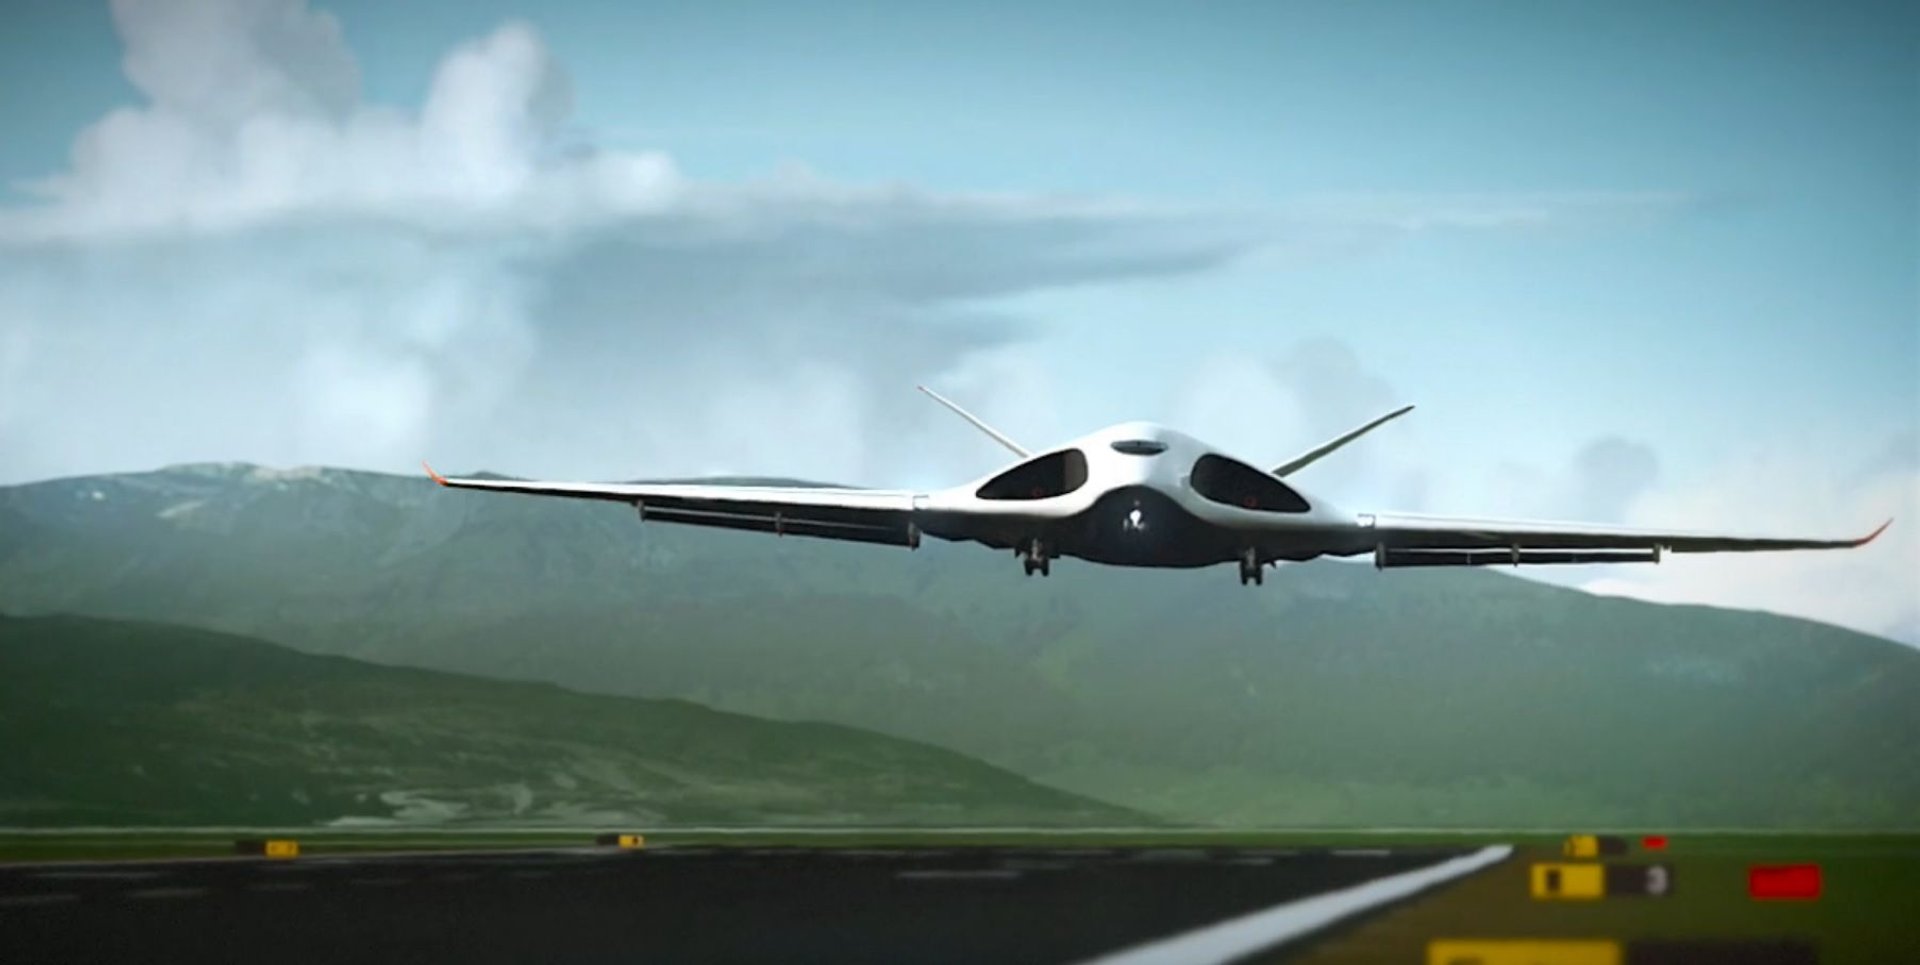 Wizualizacja lotu samolotu przyszłości